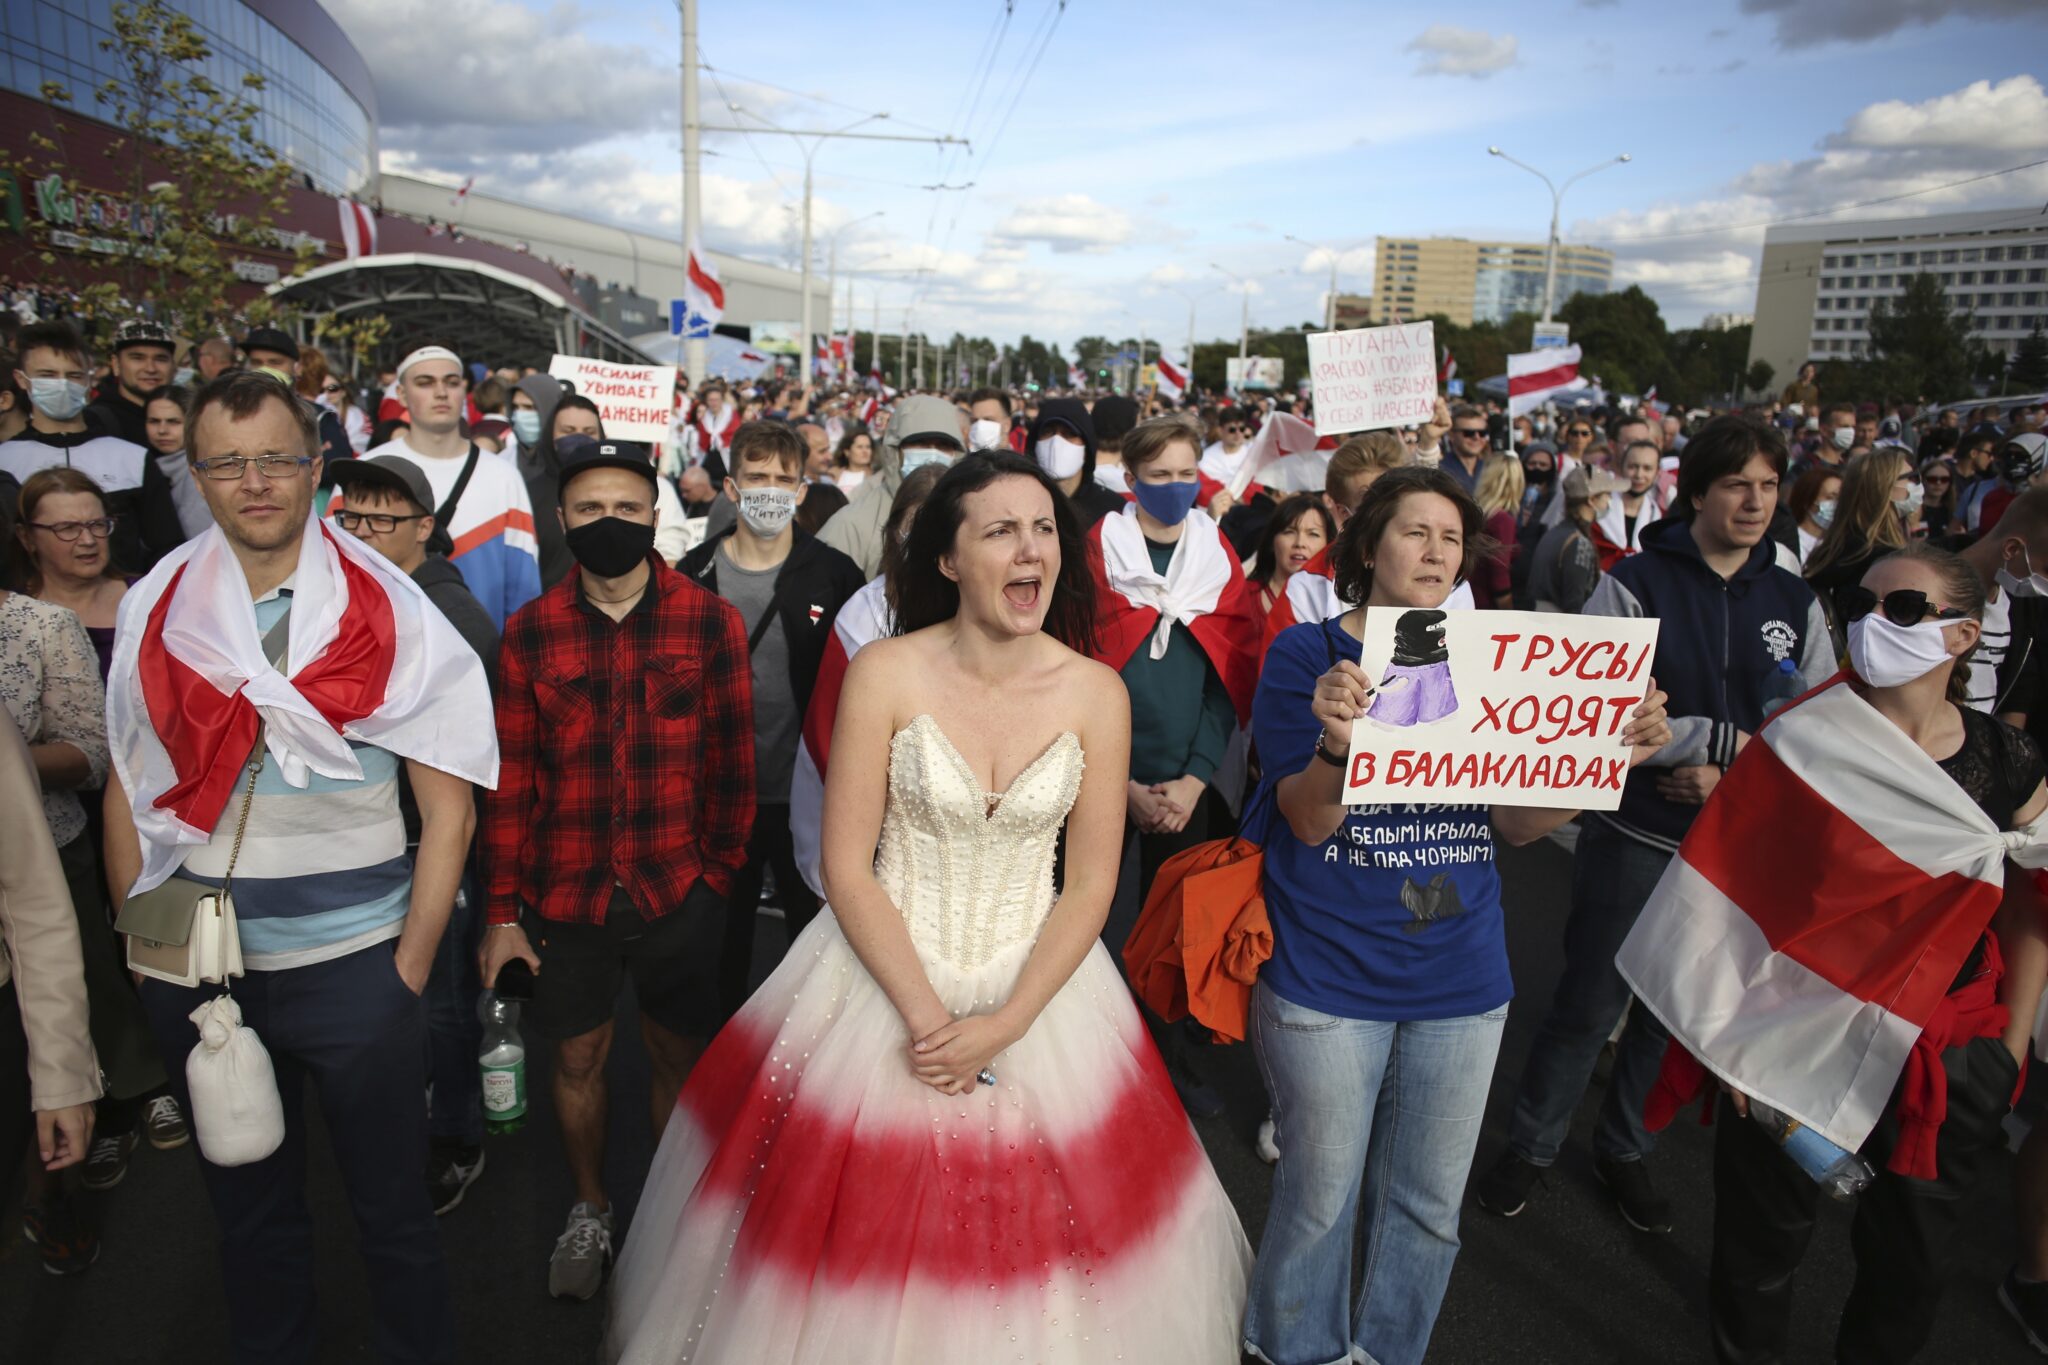 Протестующие на марше в Минске. Фото TUT.by via AP/Scanpix/Leta 